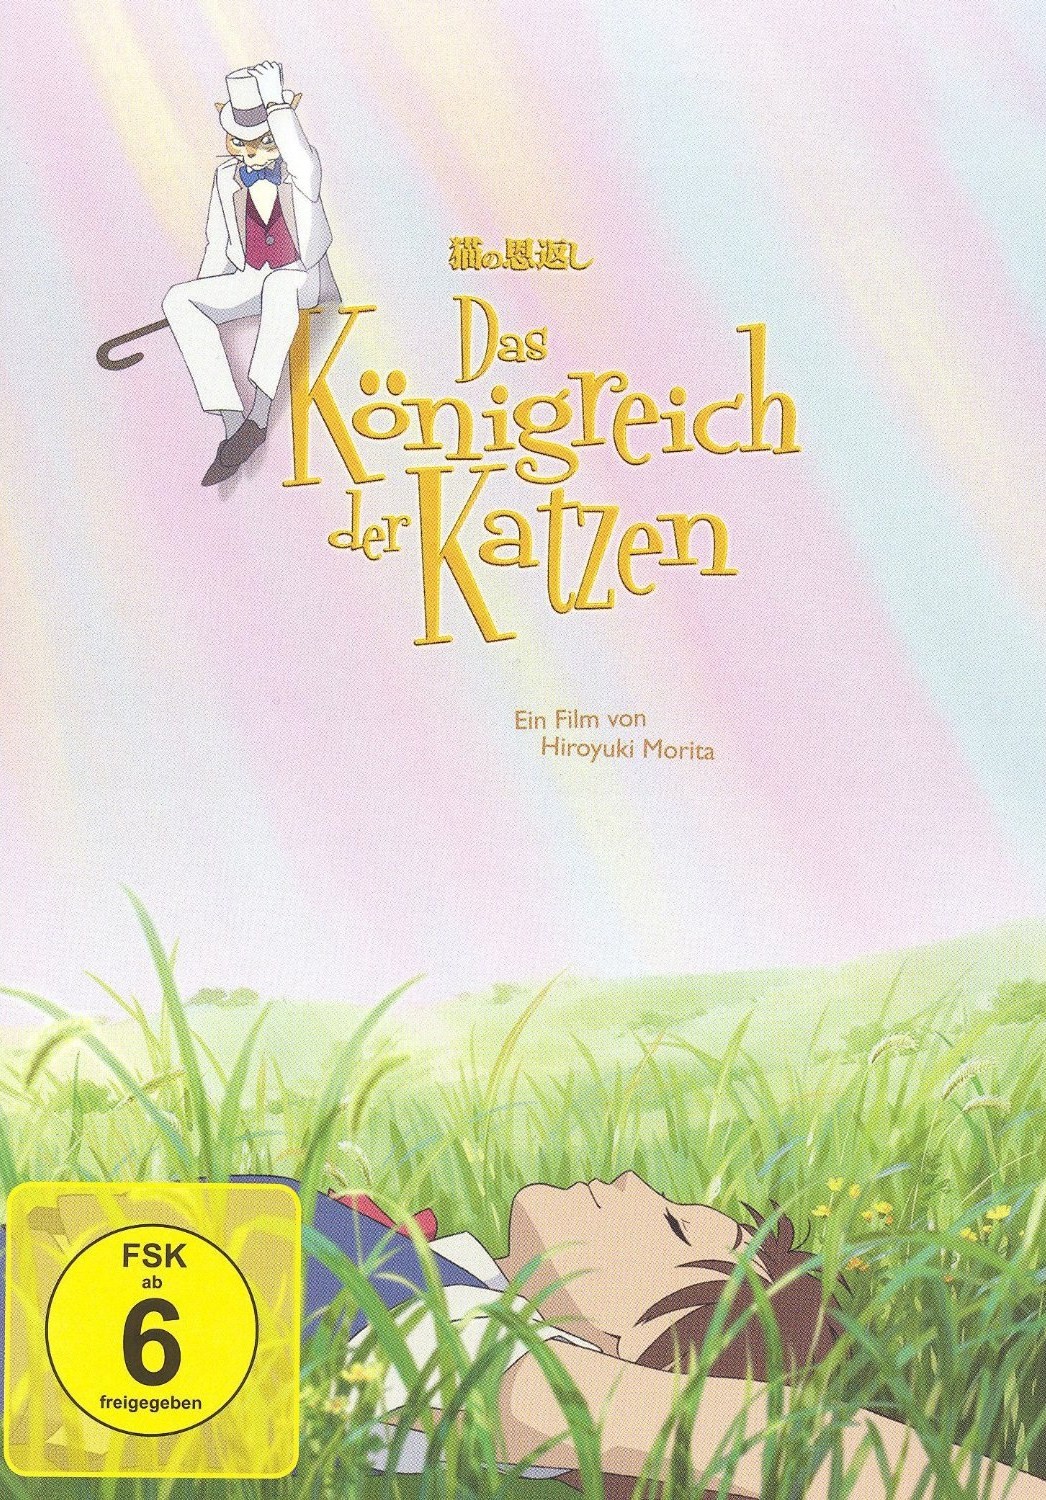 Review: Das Königreich der Katzen (Studio Ghibli Bluray Collection)